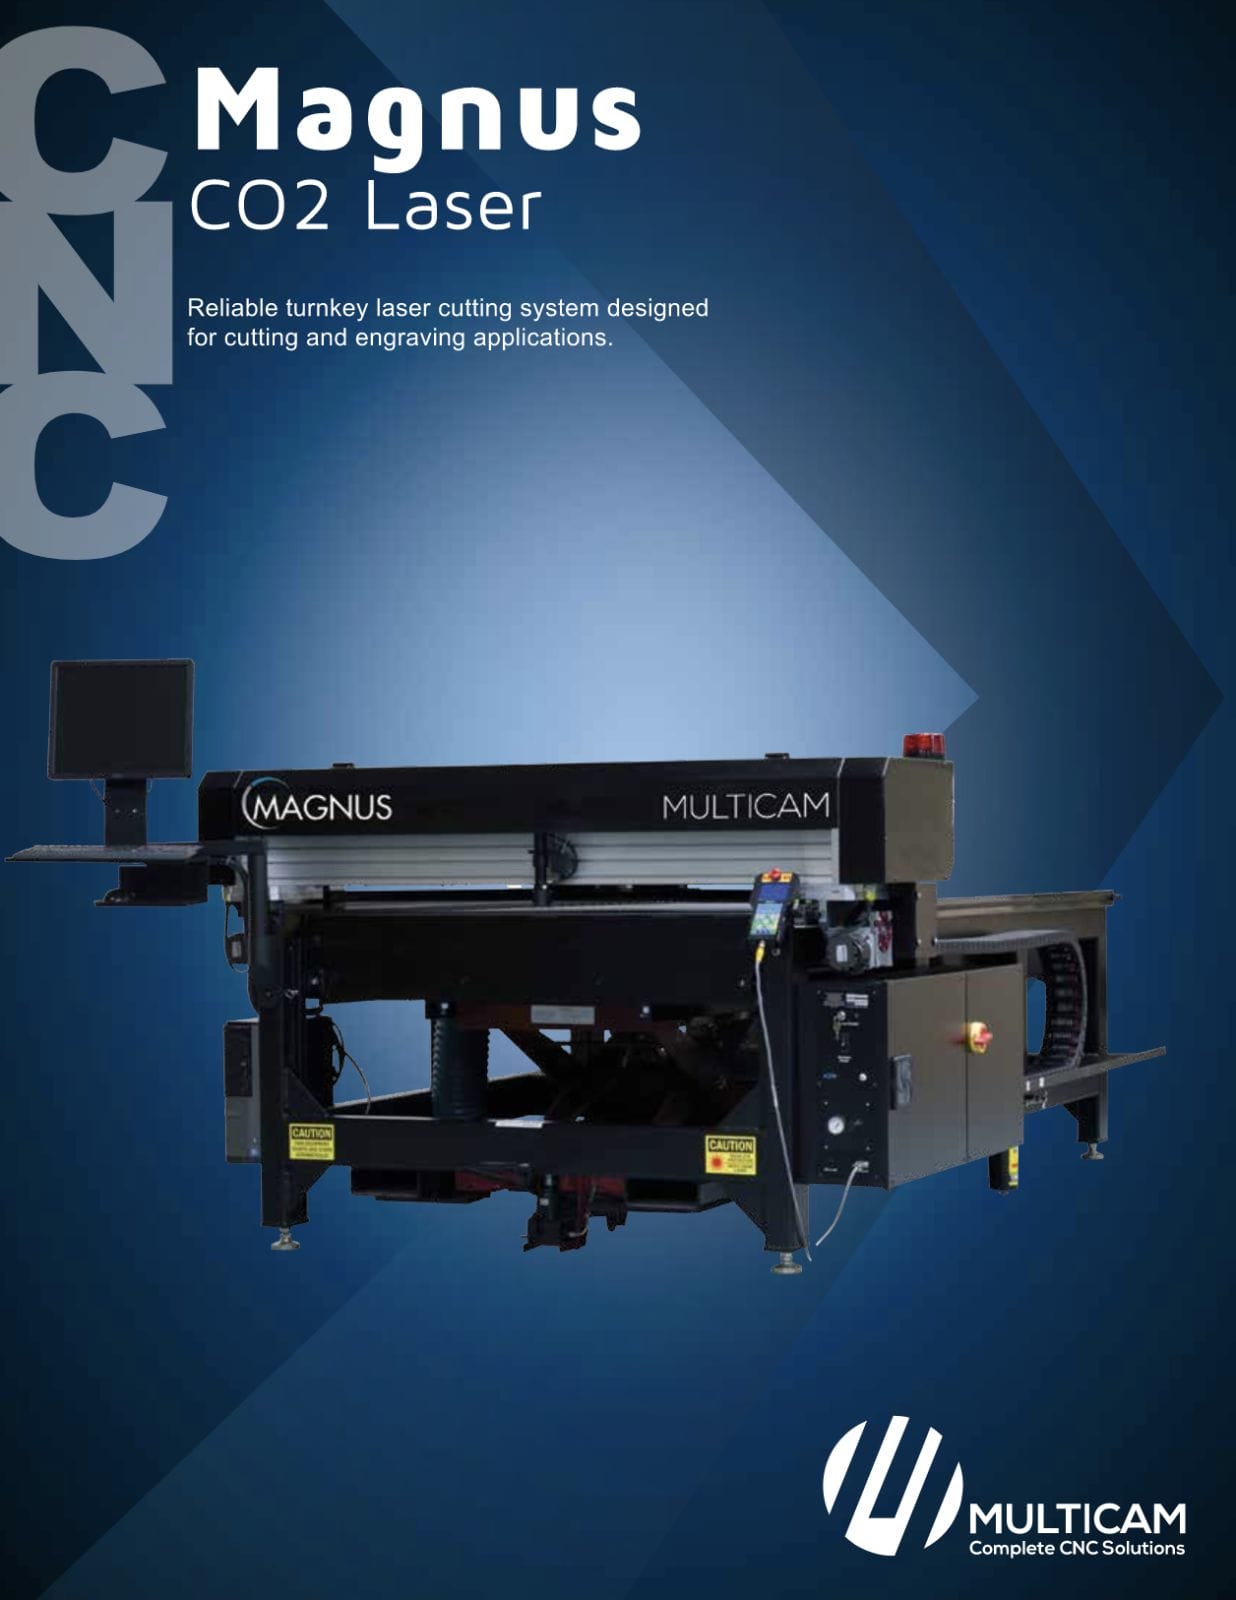 Magnus CO2 Laser